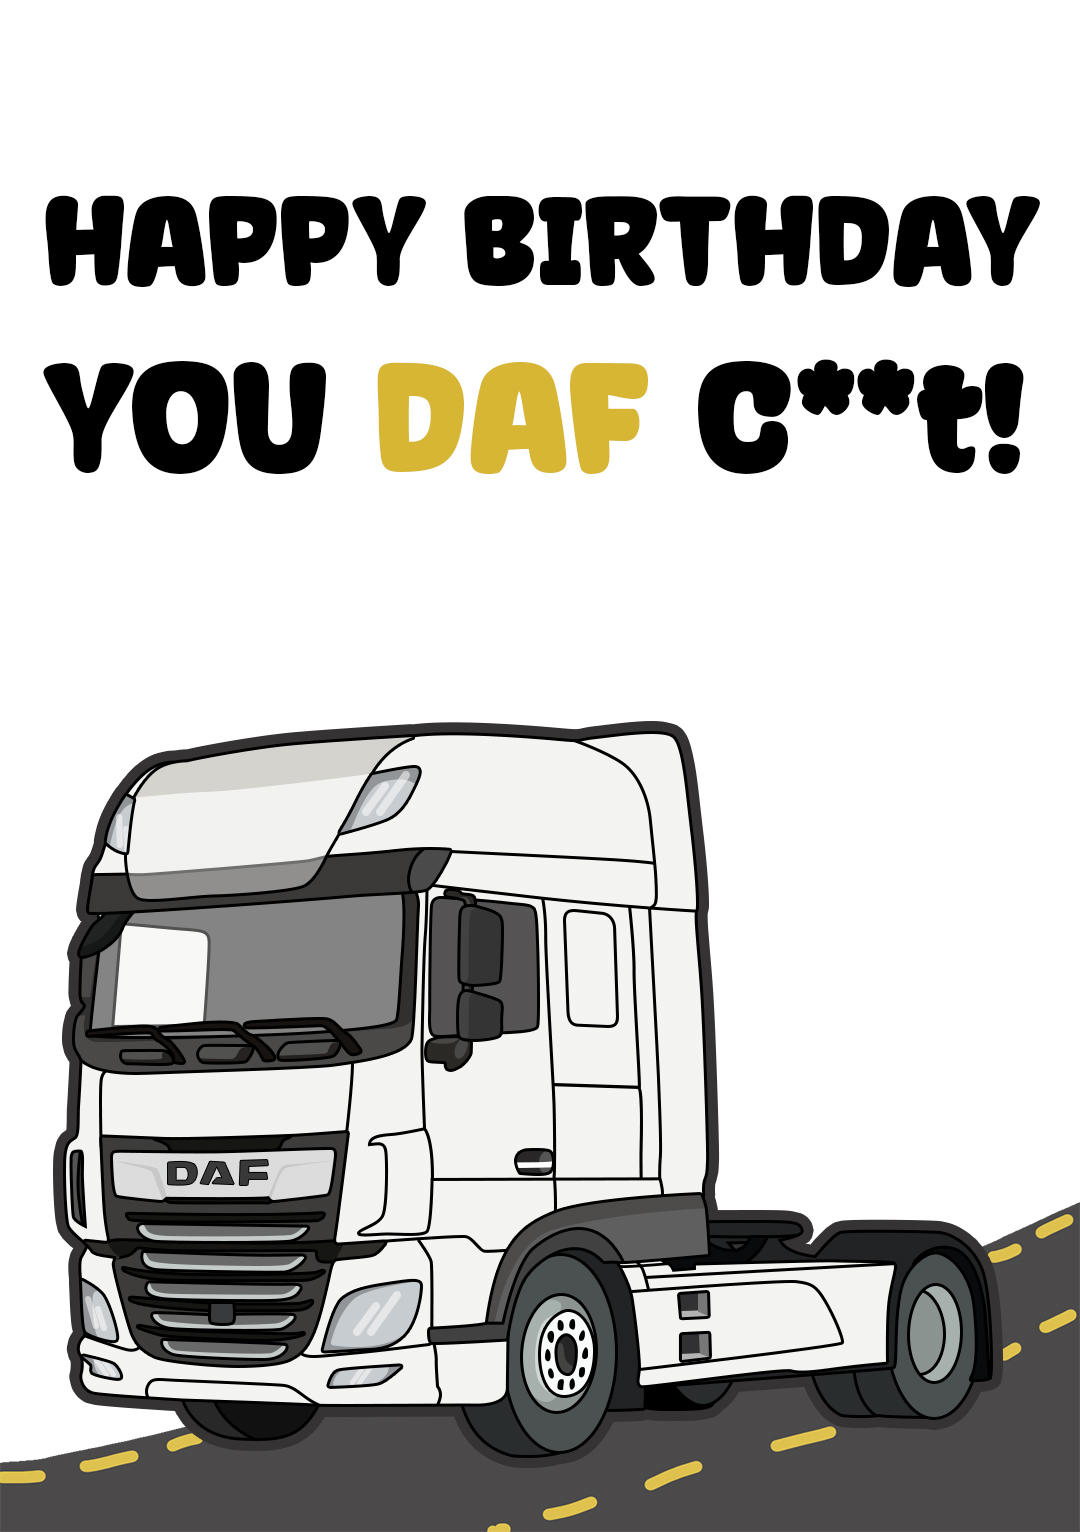 Happy Birthday You DAF C**t!